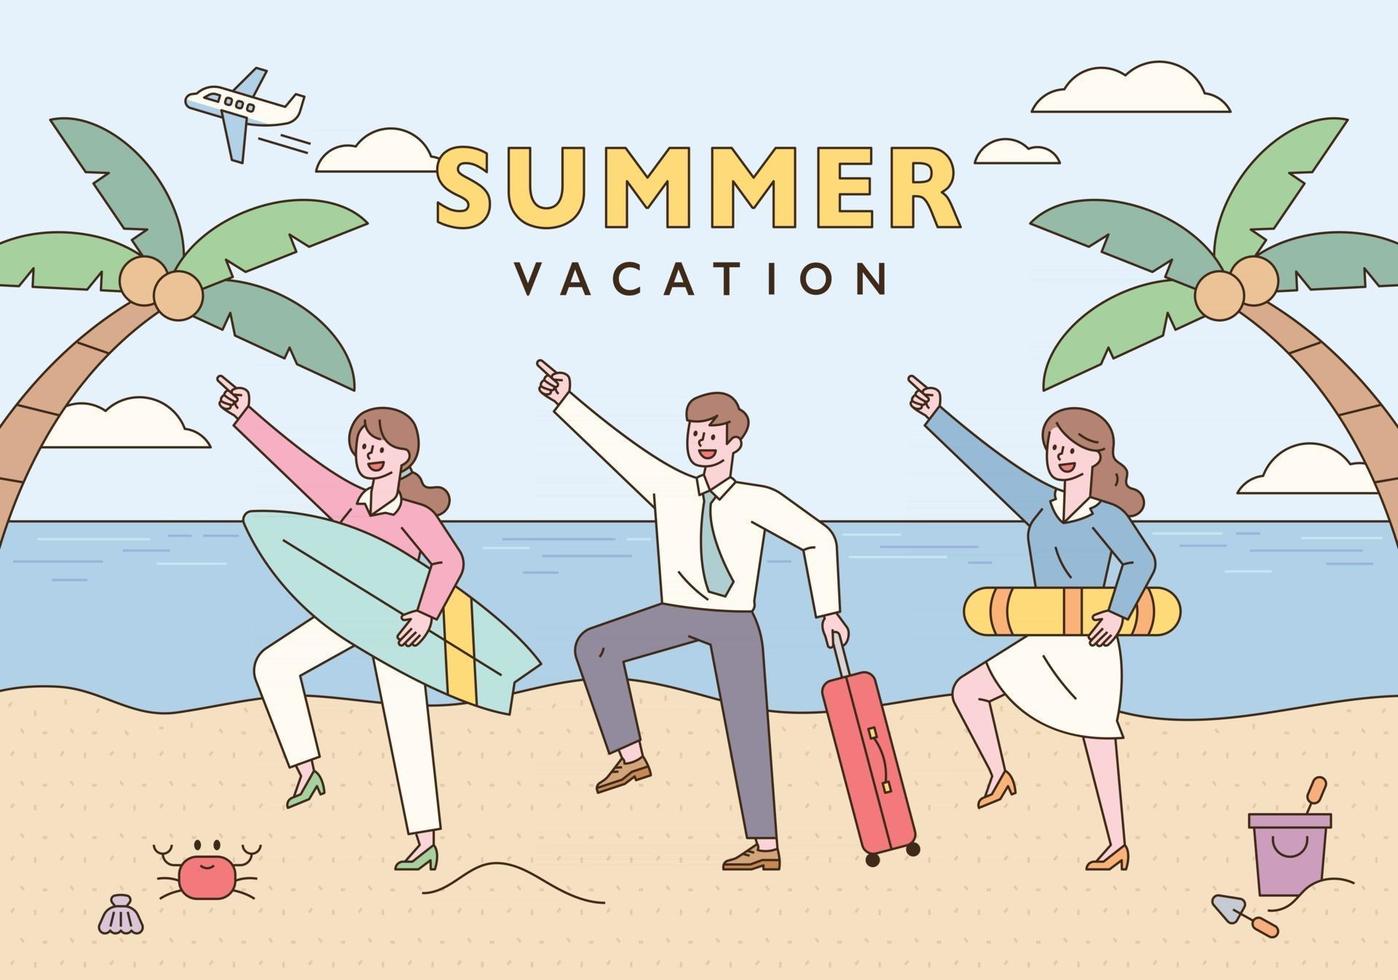 zakenmensen die grappige poses maken met surfplanken, zwembuizen en koffers. strand achtergrond poster met palmbomen. platte ontwerpstijl minimale vectorillustratie. vector